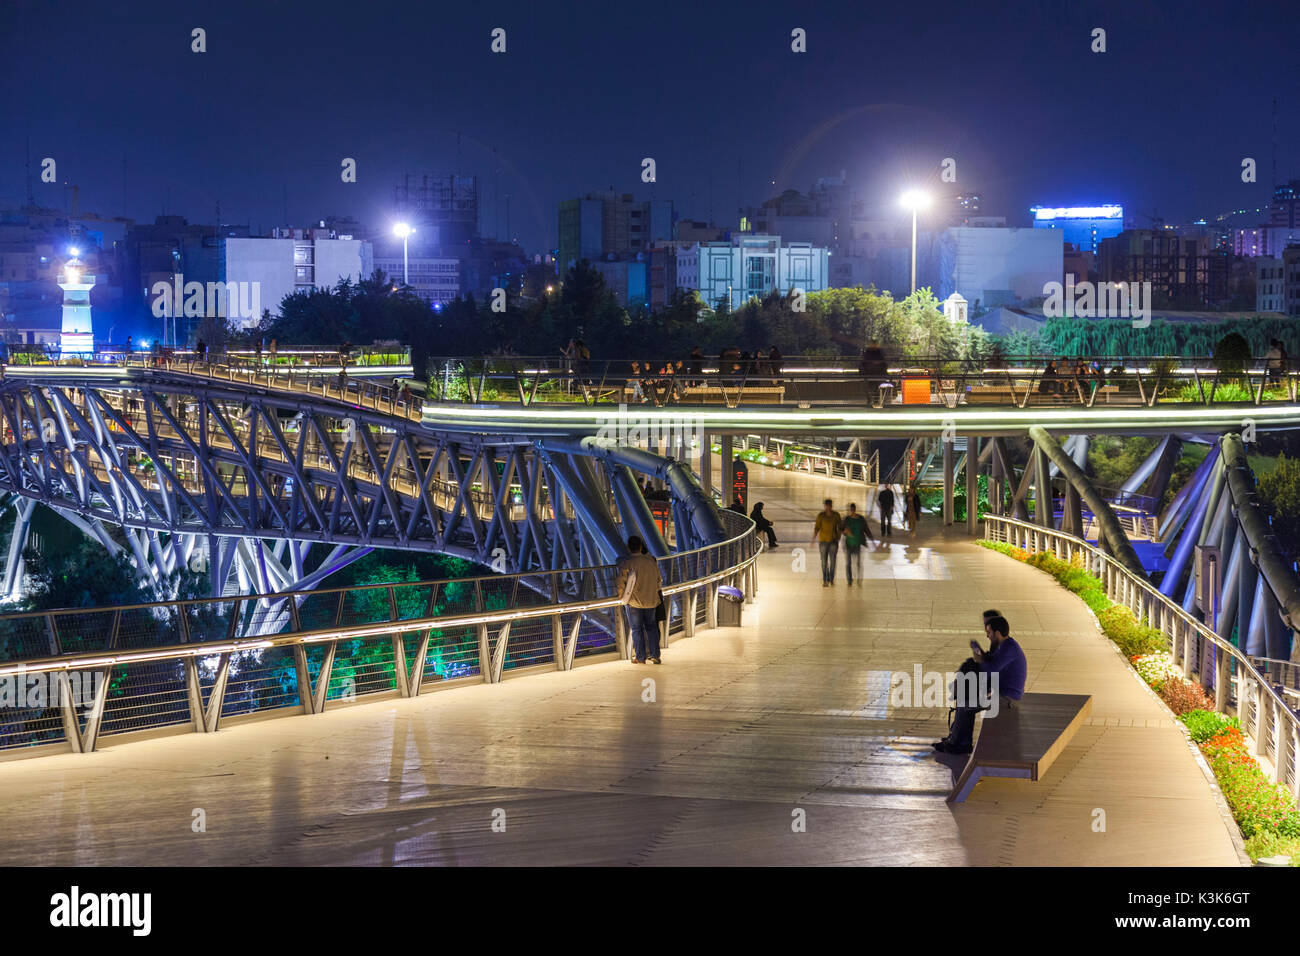 Iran, Teheran, Skyline der Stadt vom Pol e Tabiat Natur Brücke, entworfen von Canadian-iranischen Architekten Leila Araghian, gebaut im Jahr 2014, Dämmerung, Besucher Stockfoto